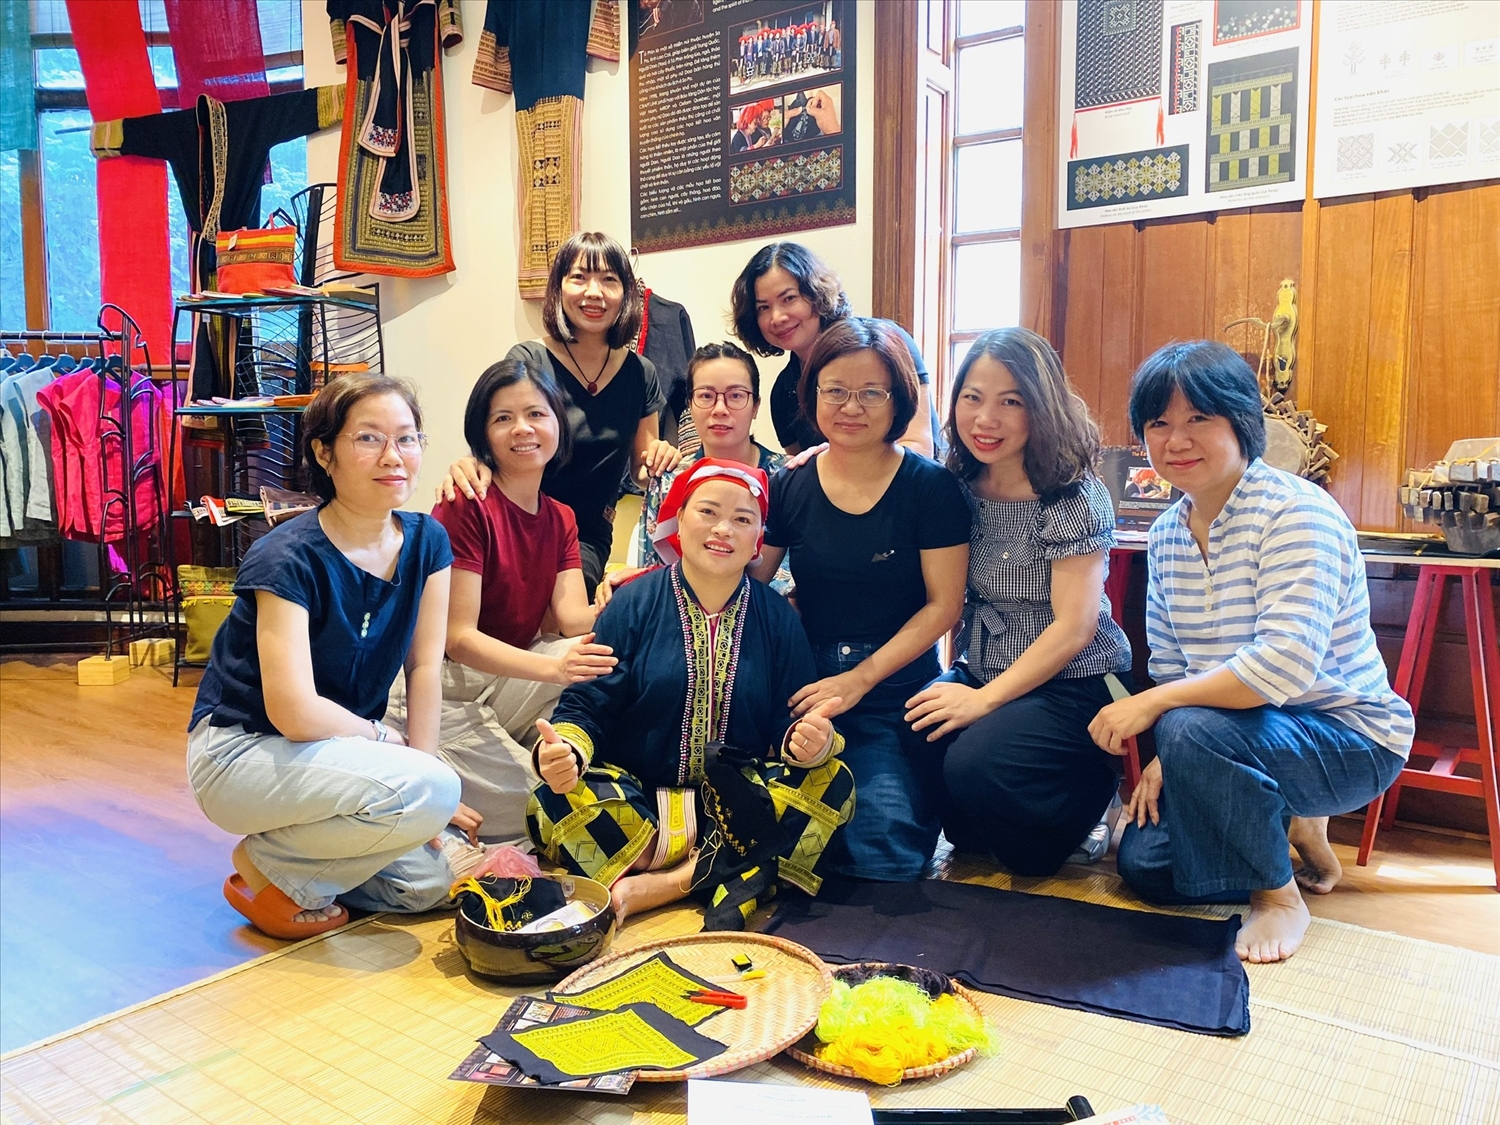 Ngoài hoạt động kinh doanh, Craft Link còn tổ chức các buổi trình diễn nghề thêu, dệt truyền thống của các đồng bào DTTS, để công chúng được trực tiếp tham gia, trải nghiệm (Ảnh: Craft Link)